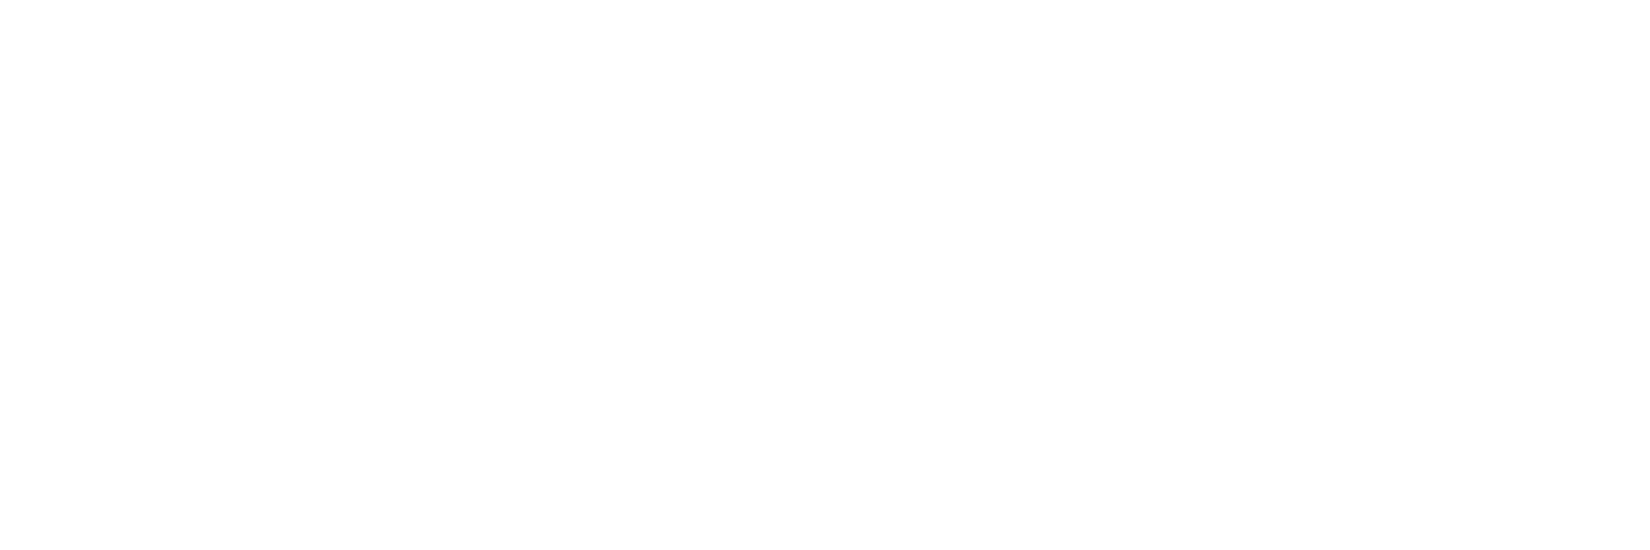 Rougarou - A Cajun Legend